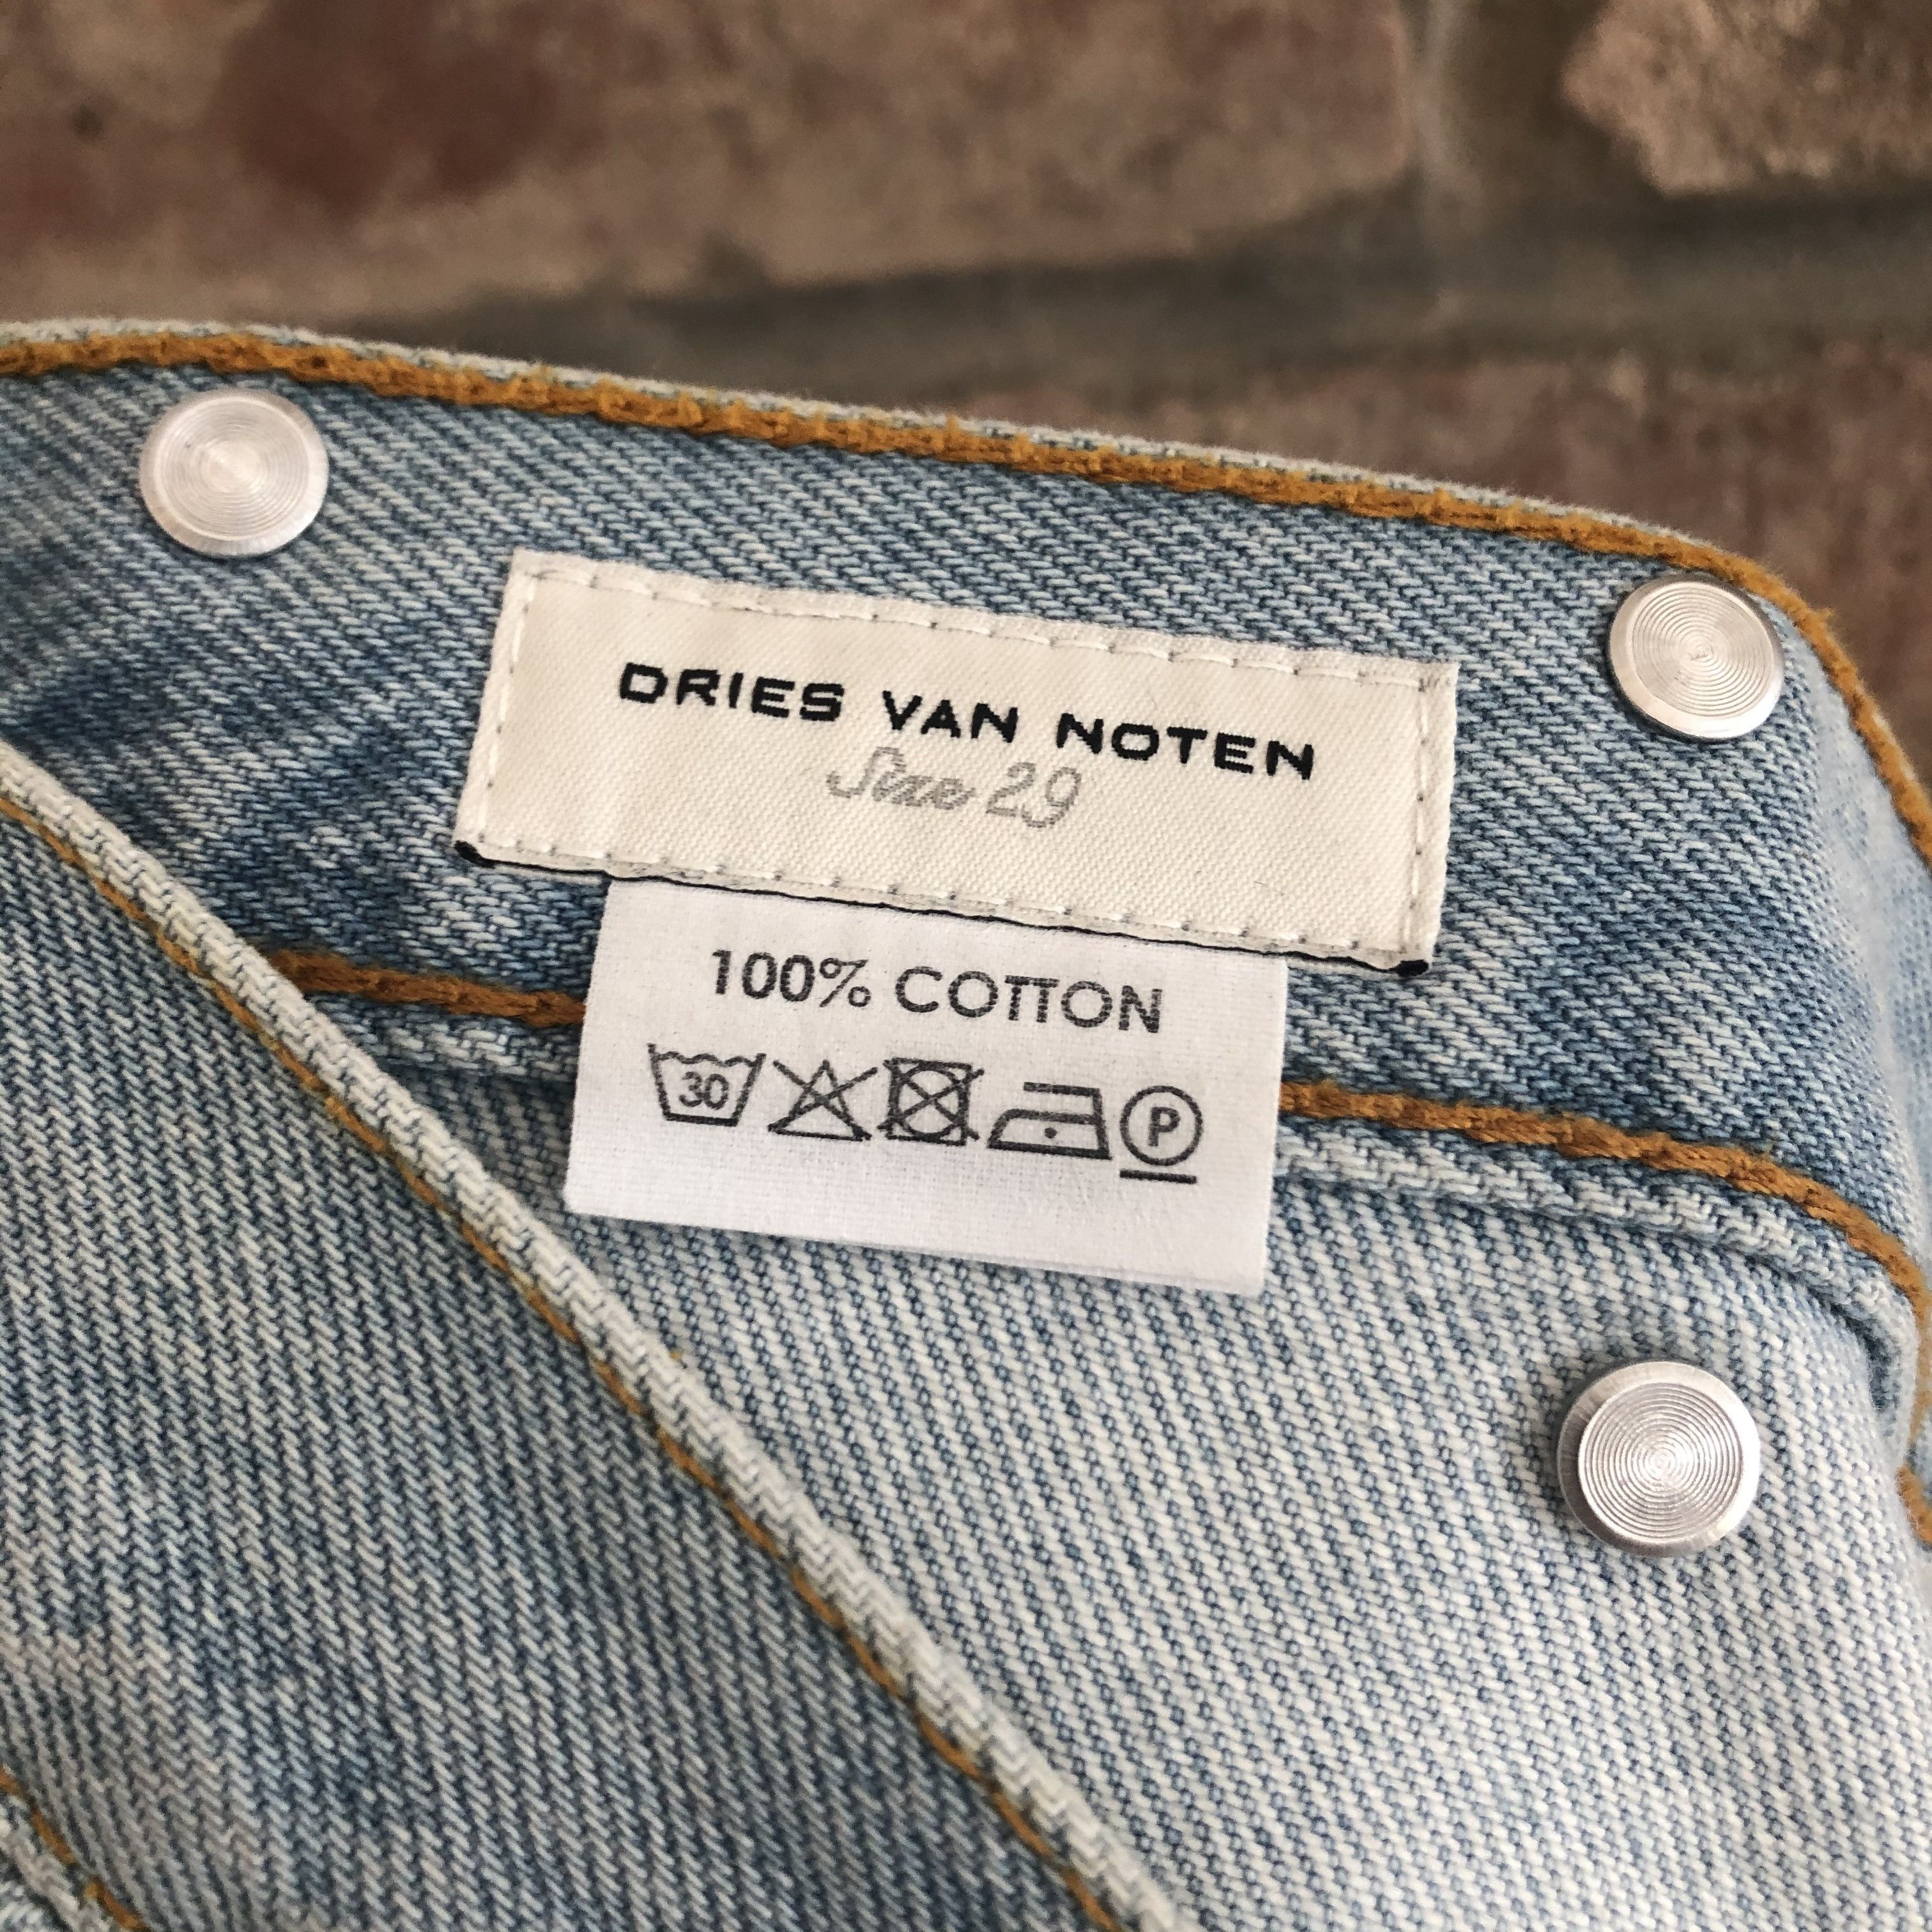 Dries Van Noten Light Blue Wash Denim Jeans Size US 29 - 5 Preview